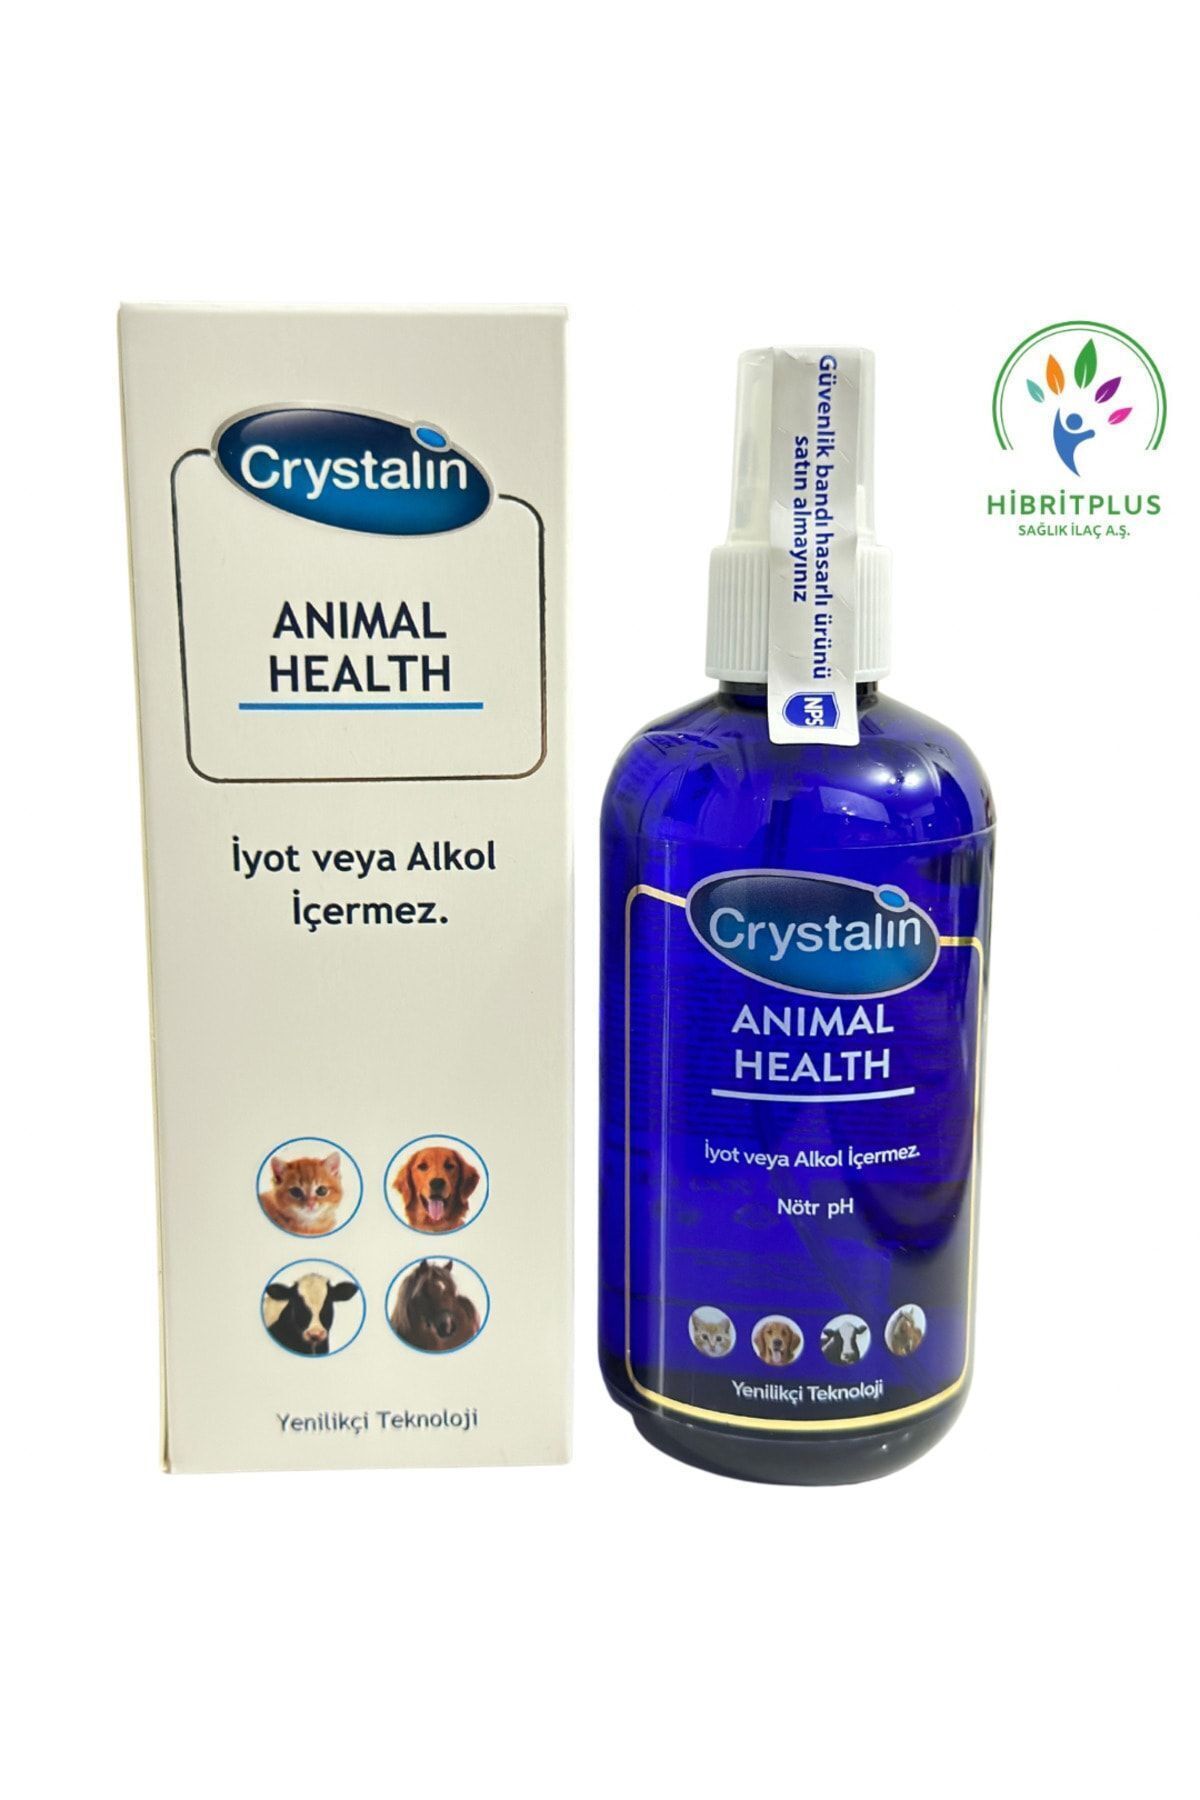 Crystalin Anımal Health 250 ml 2026 Miatlıdır